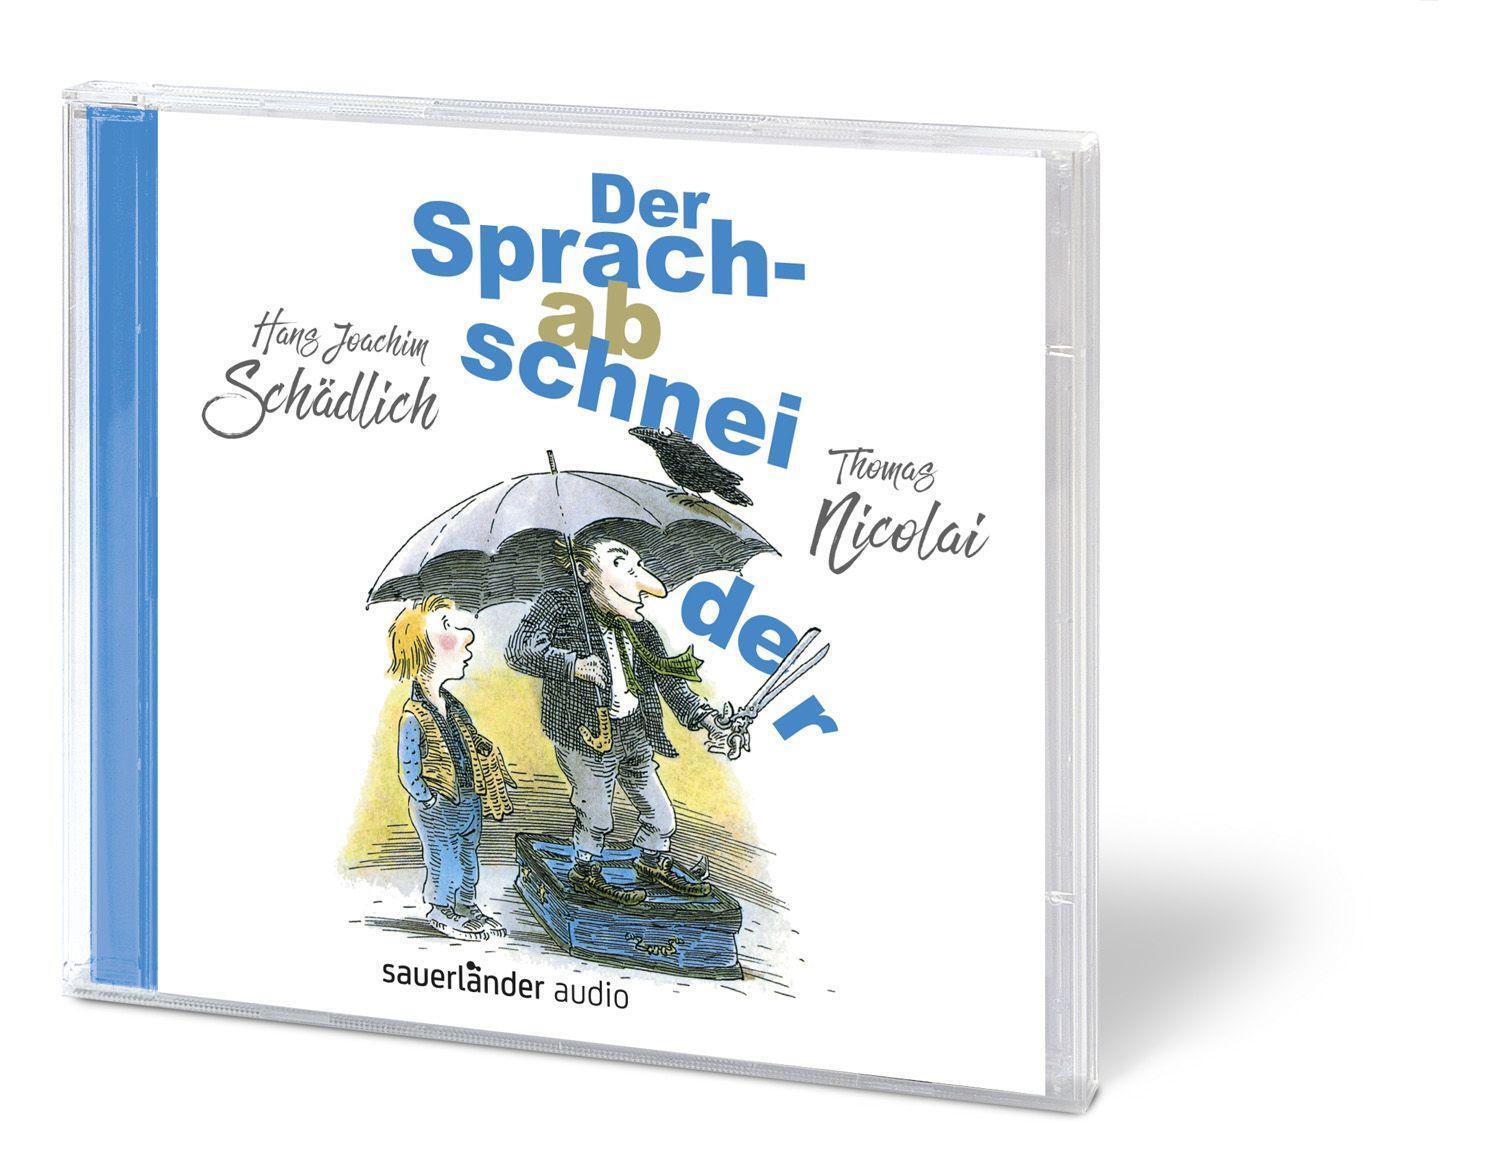 Bild: 9783839844021 | Der Sprachabschneider | Hans Joachim Schädlich | Audio-CD | Jewelcase